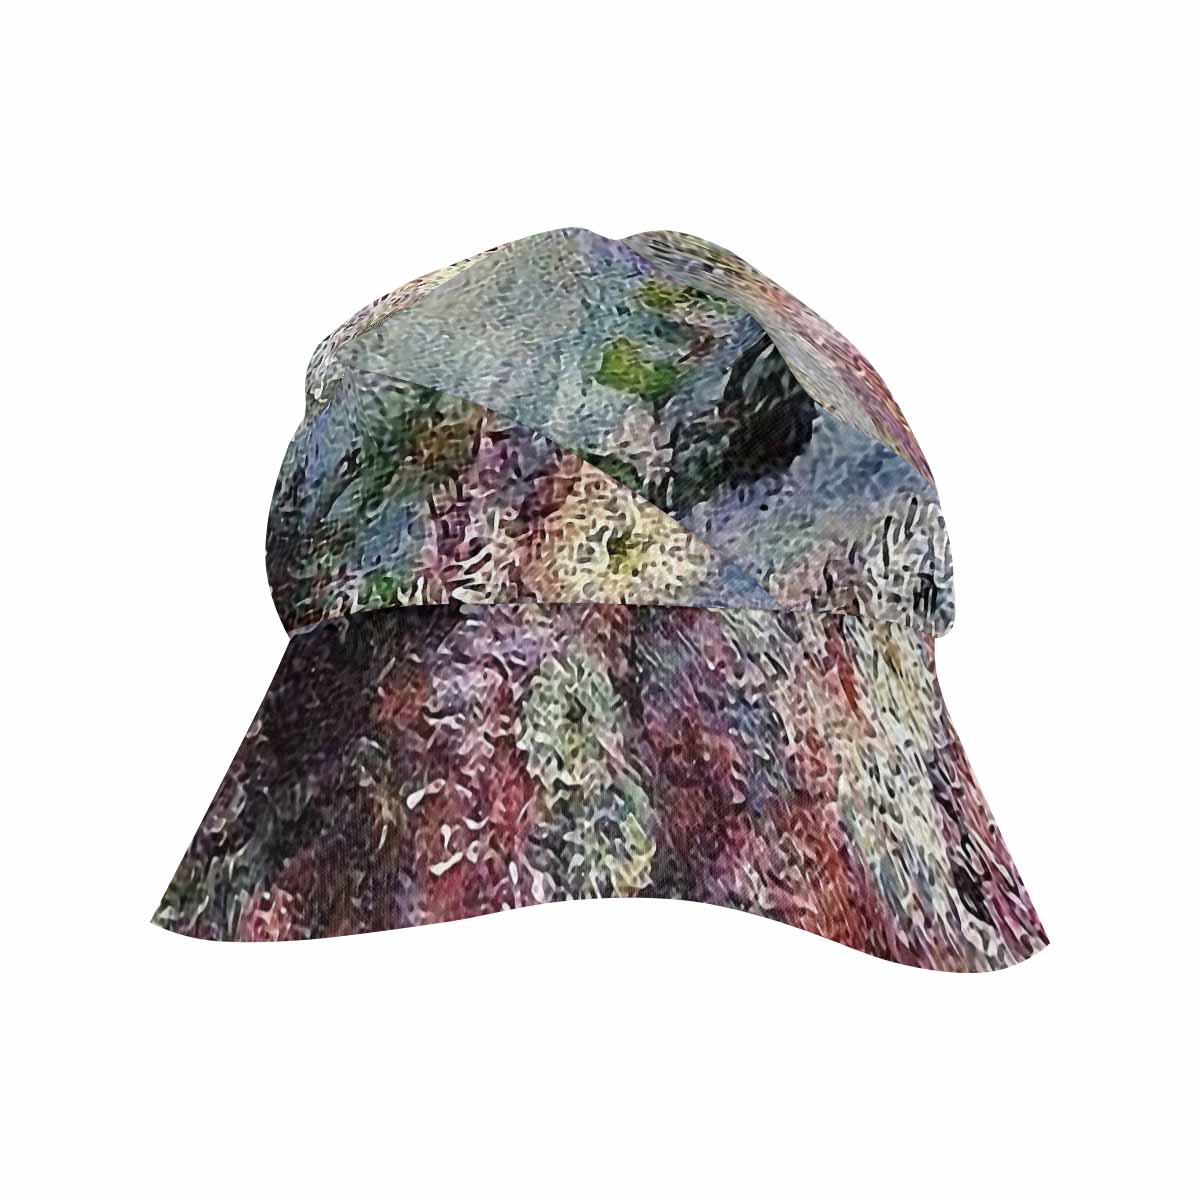 Vintage floral wide brim sunvisor Hat, outdoors hat, Design 44